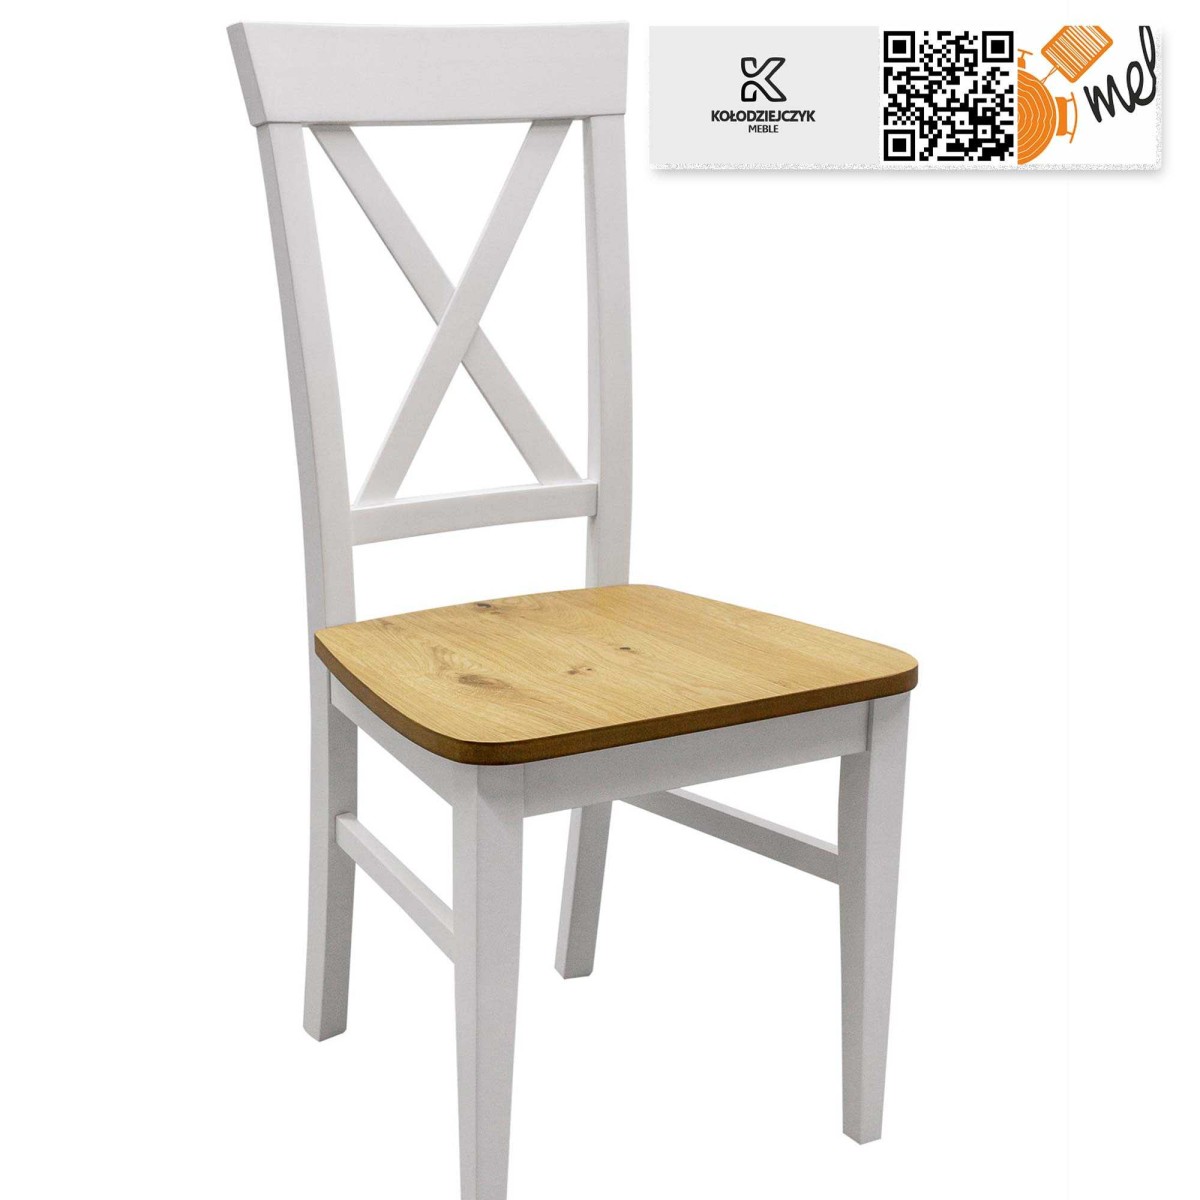 Krzesło drewniane K140 krzyżowe oparcie X białe nogi